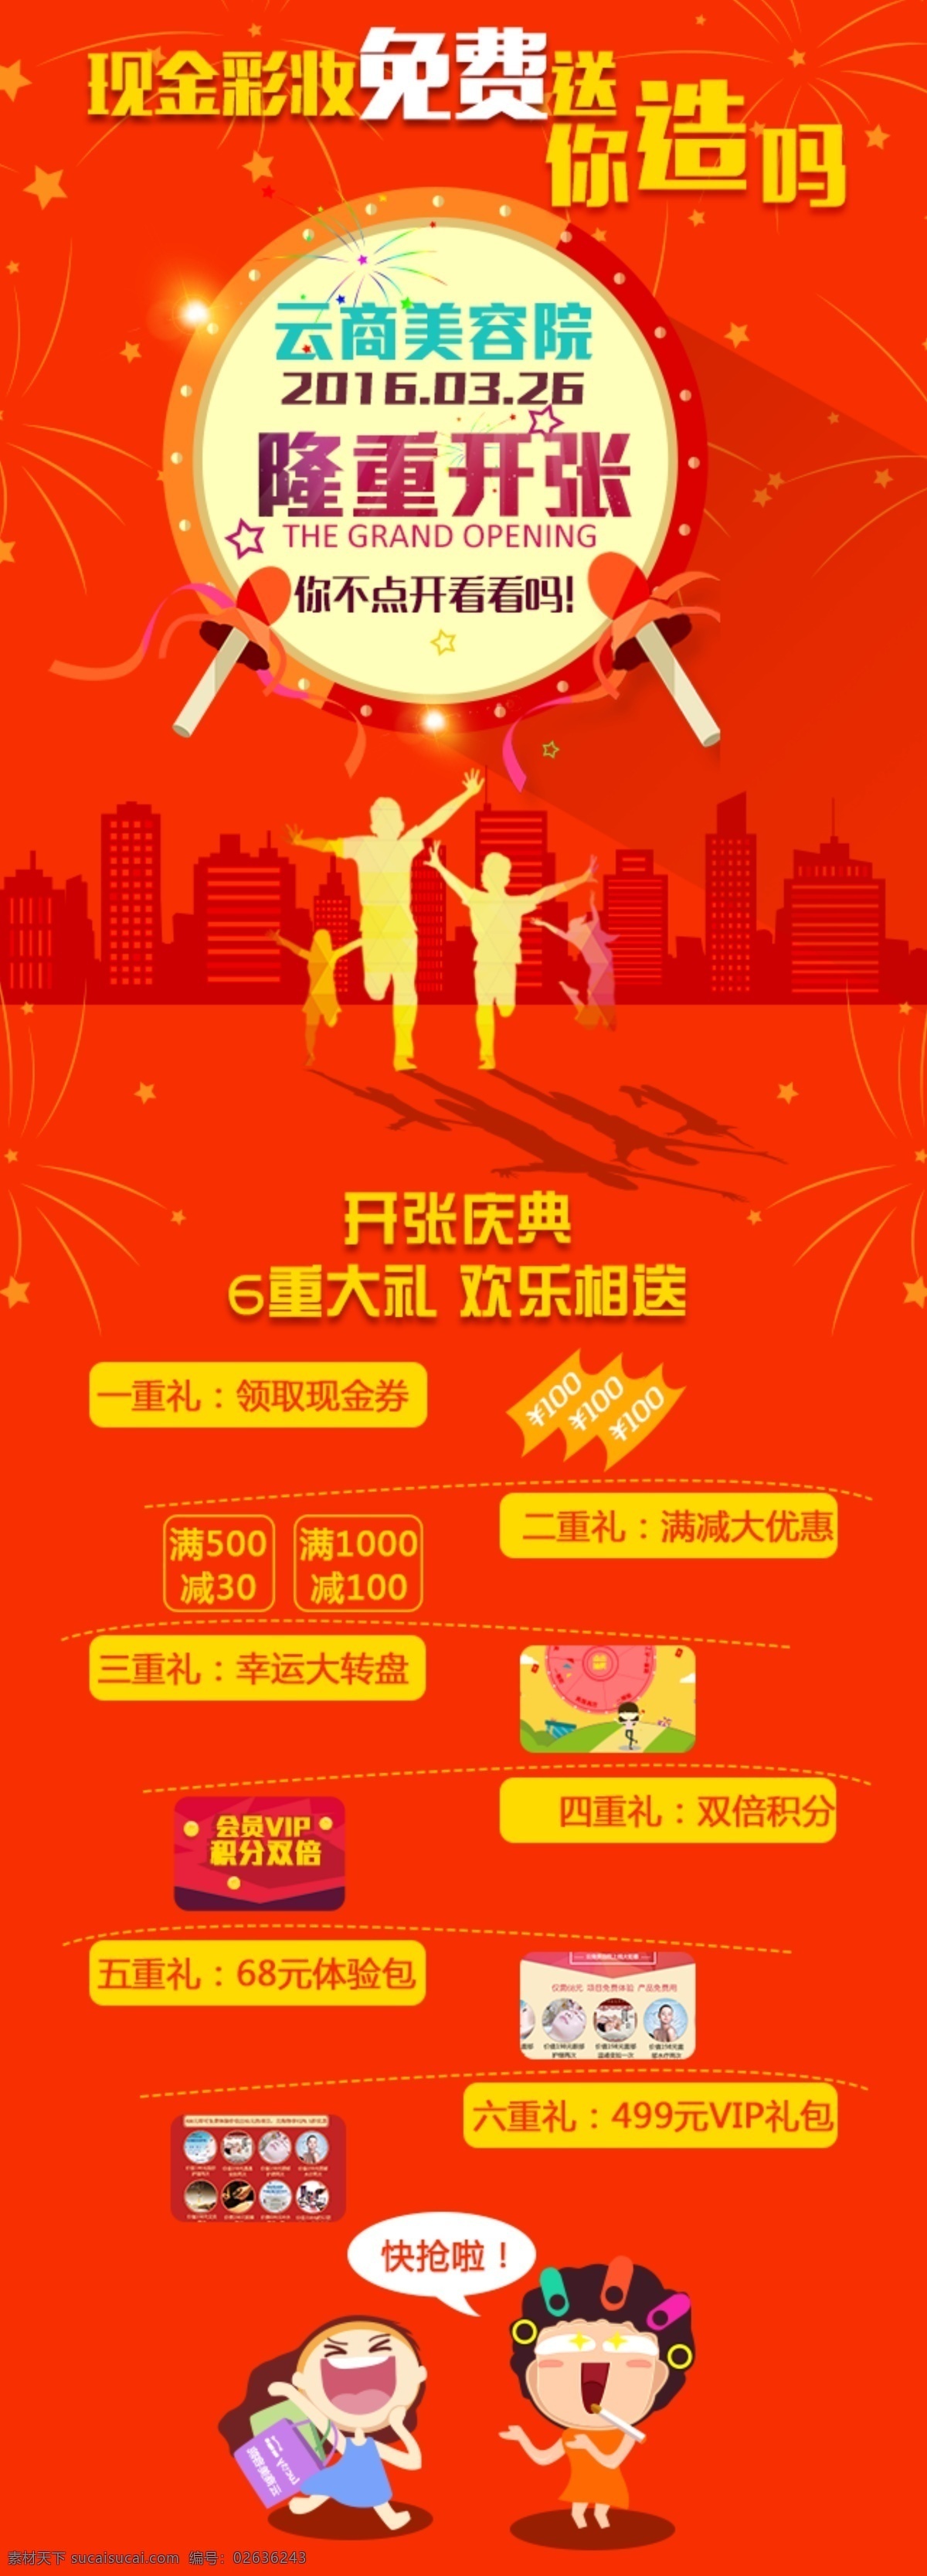 开业庆典 海报 分层 图 详情 中国红 扁平化风格 文字排版 创意海报 红色